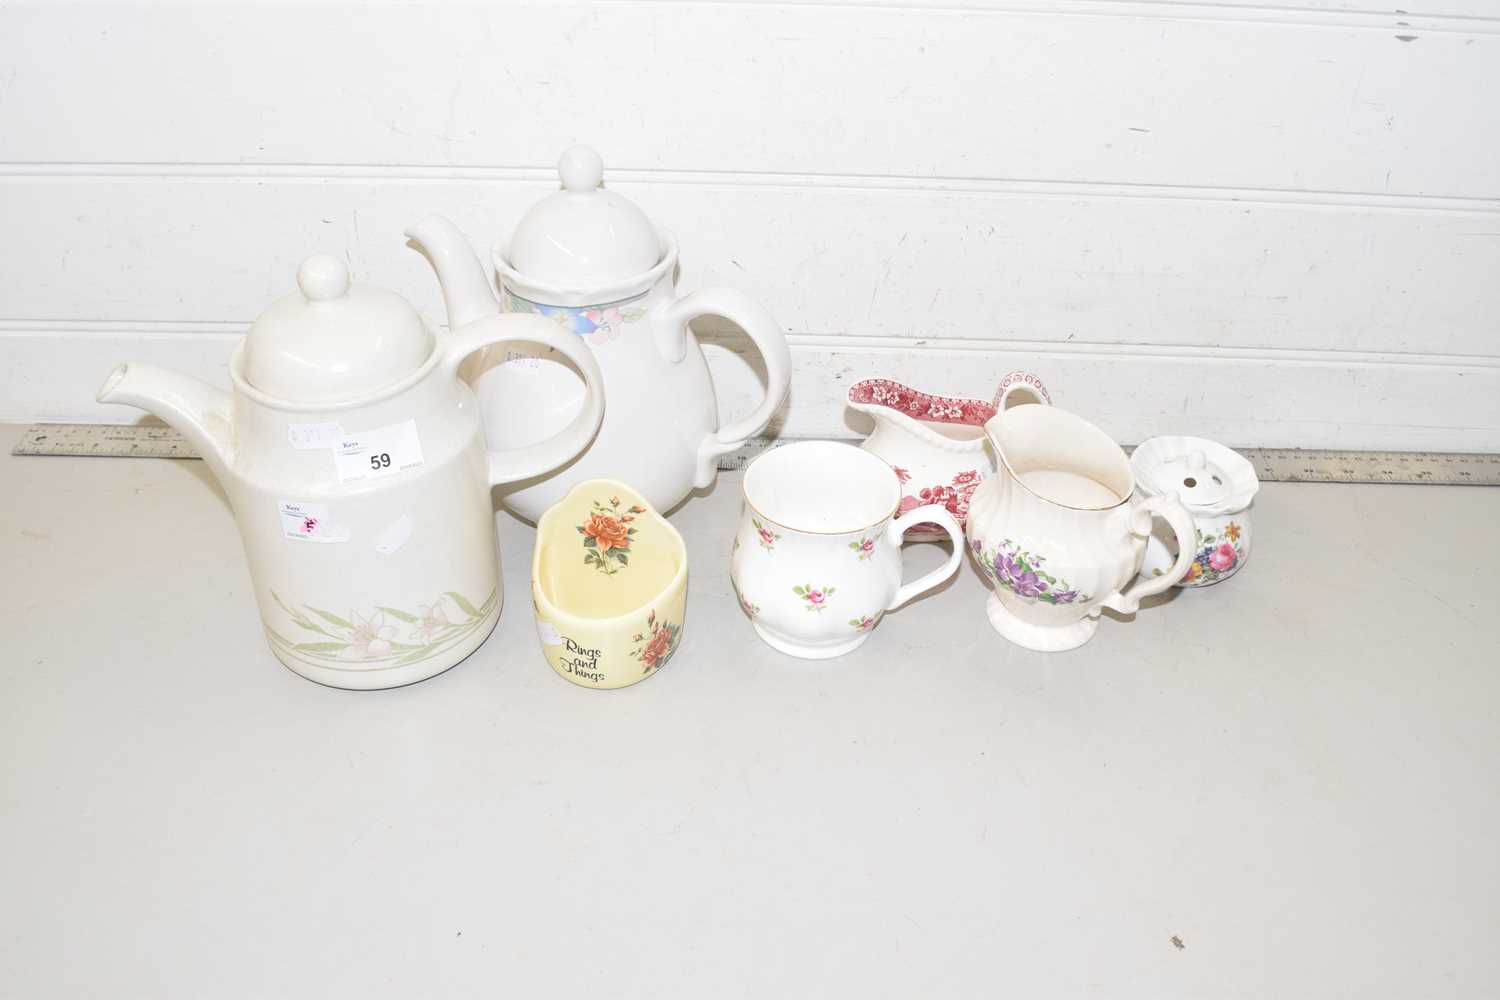 Mixed Lot: Various teapots, jugs etc